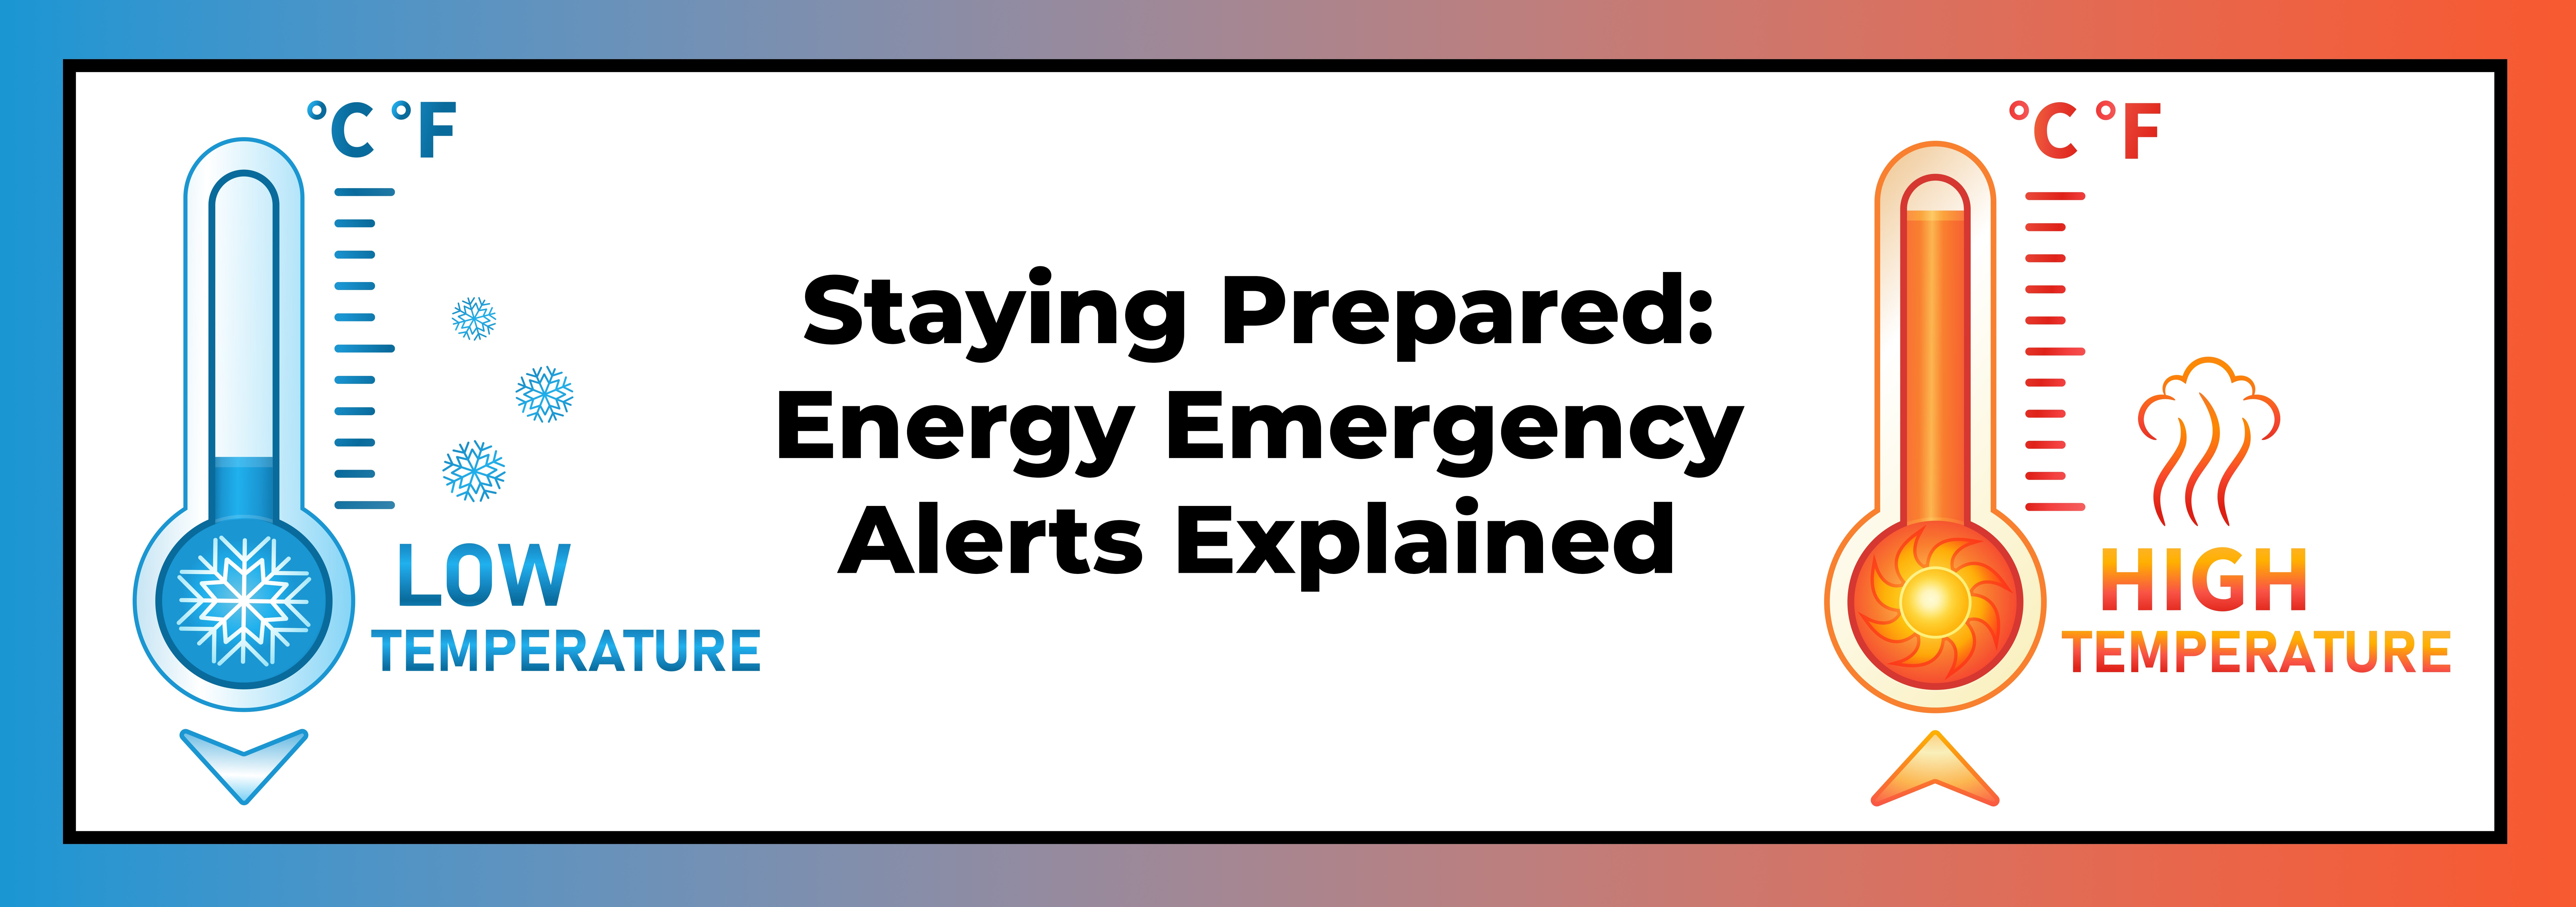 Energy Emergency Alerts Explained